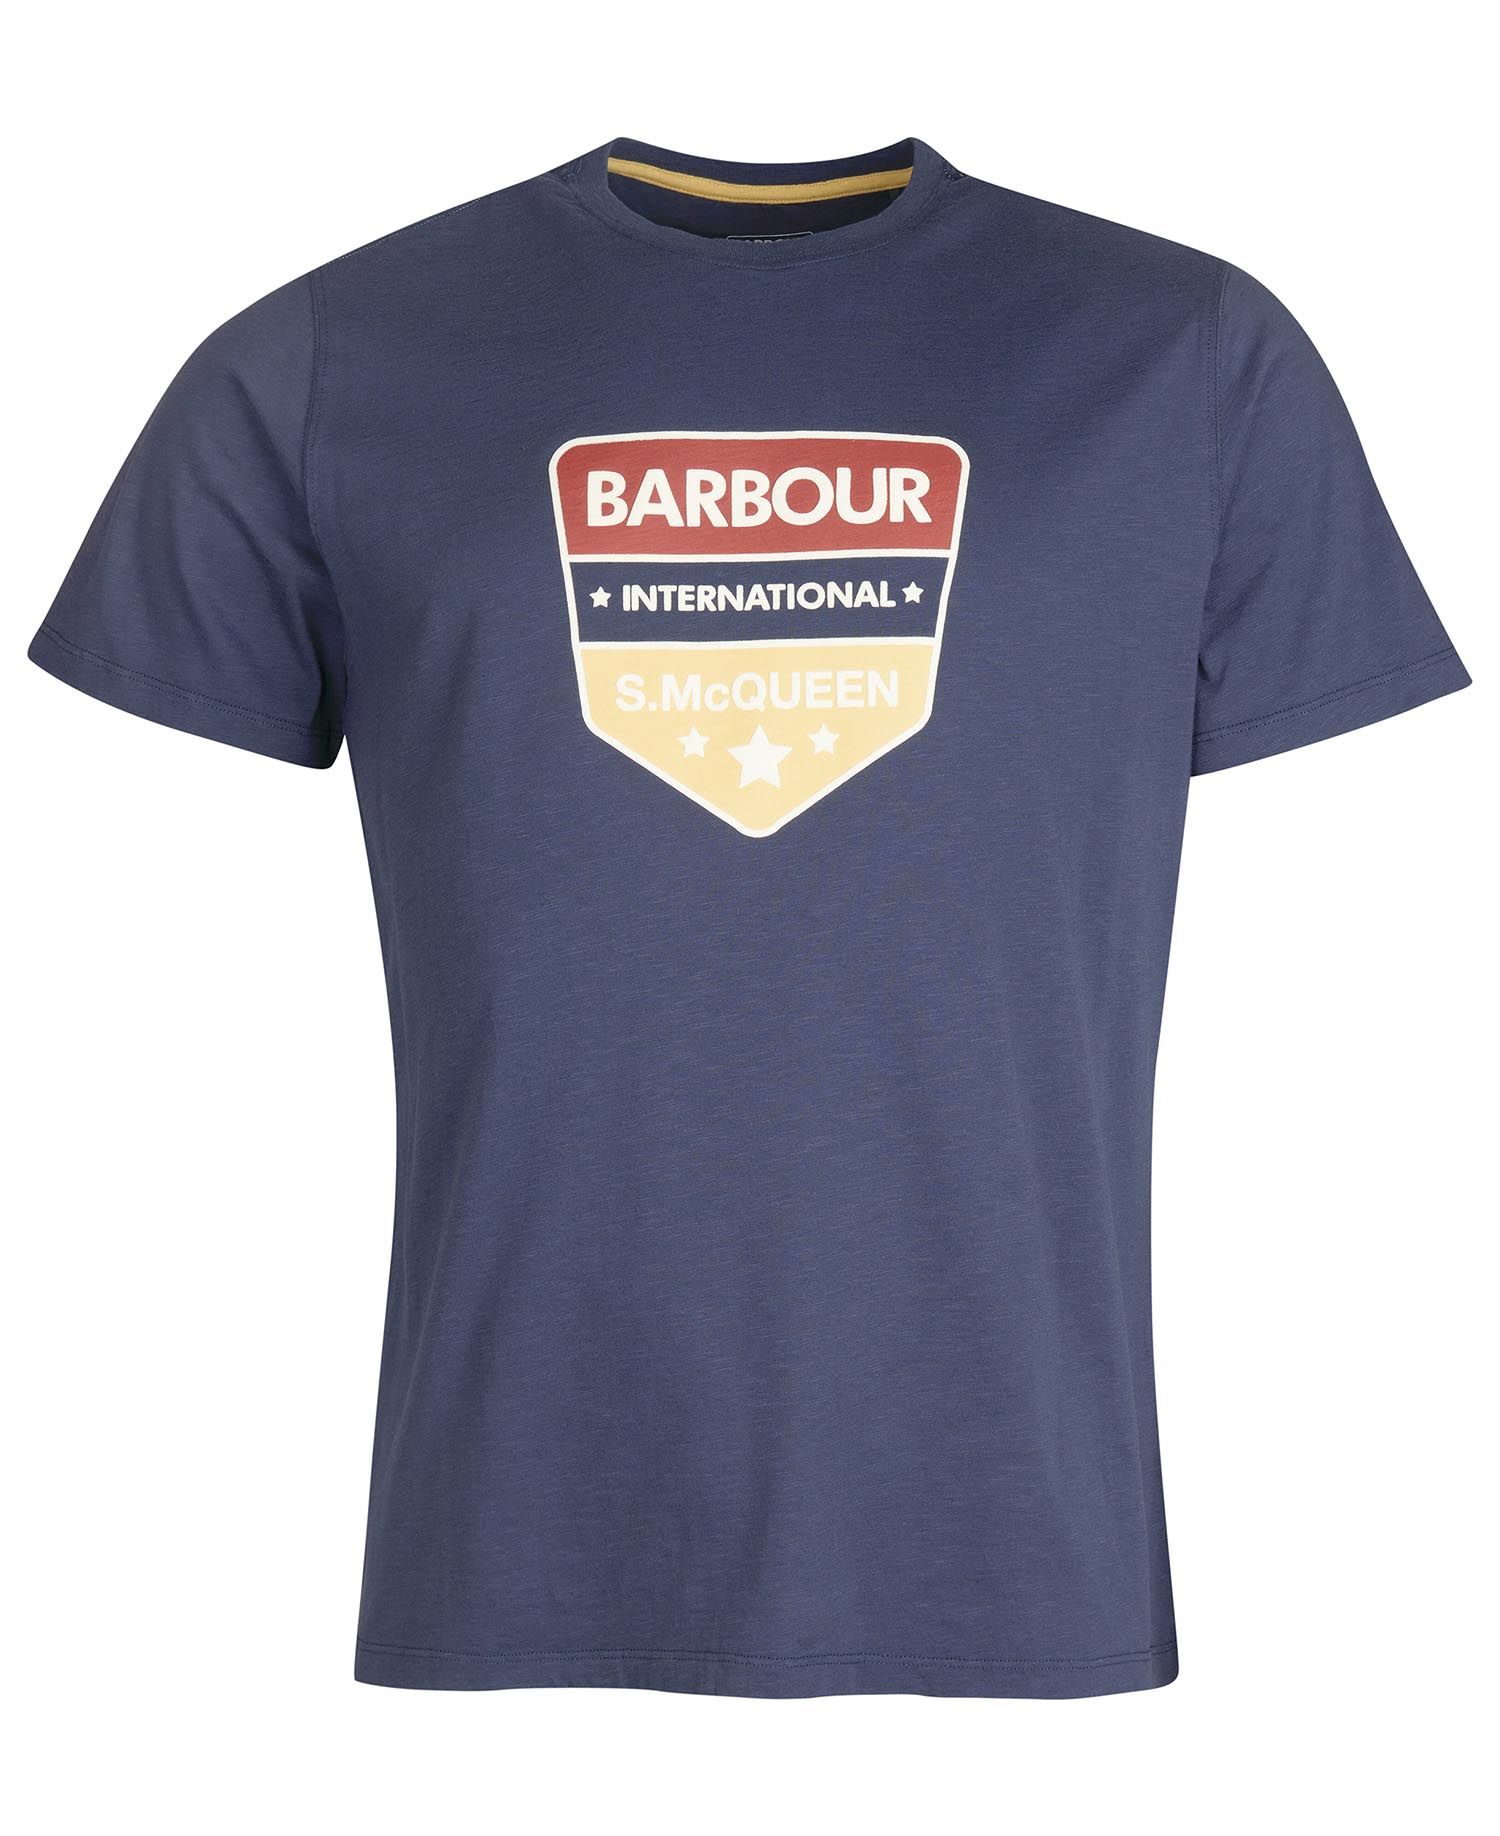 Barbour Barbour International Smq Benning T-shirt Navy